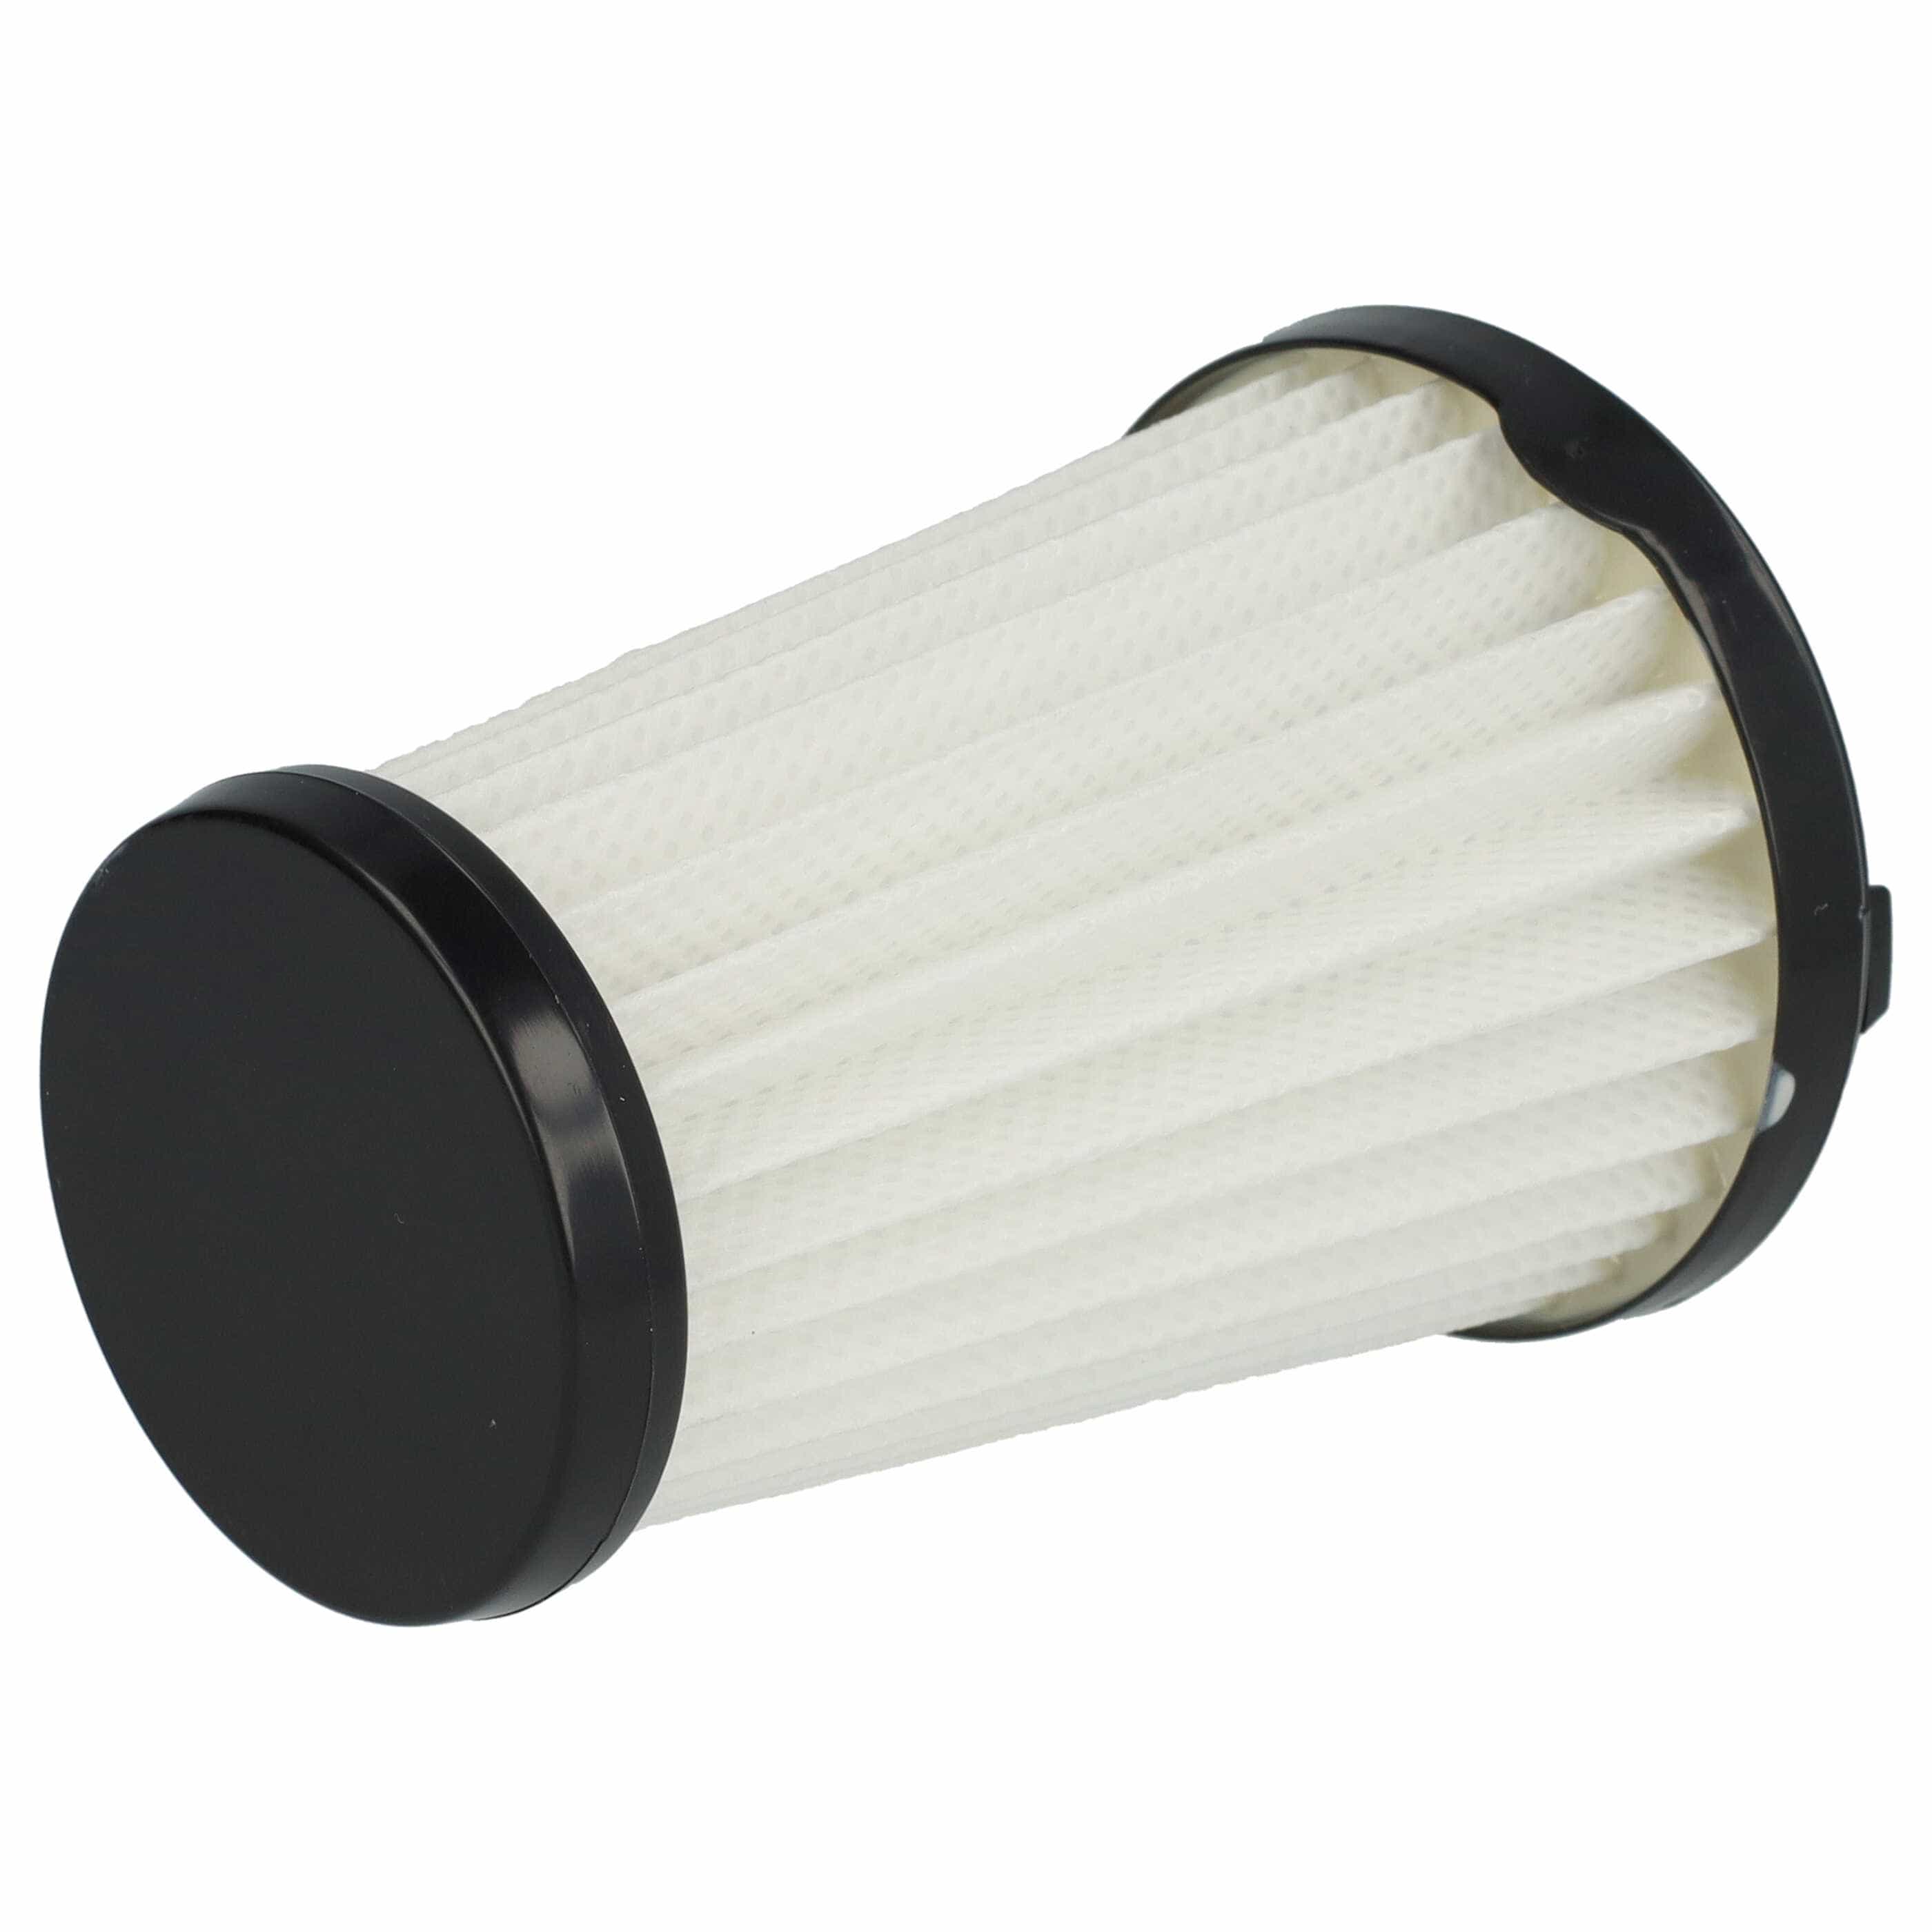 Filtro sostituisce AEG AEF150, 9001683755, 90094073100 per aspirapolvere - filtro a lamelle, nero / bianco